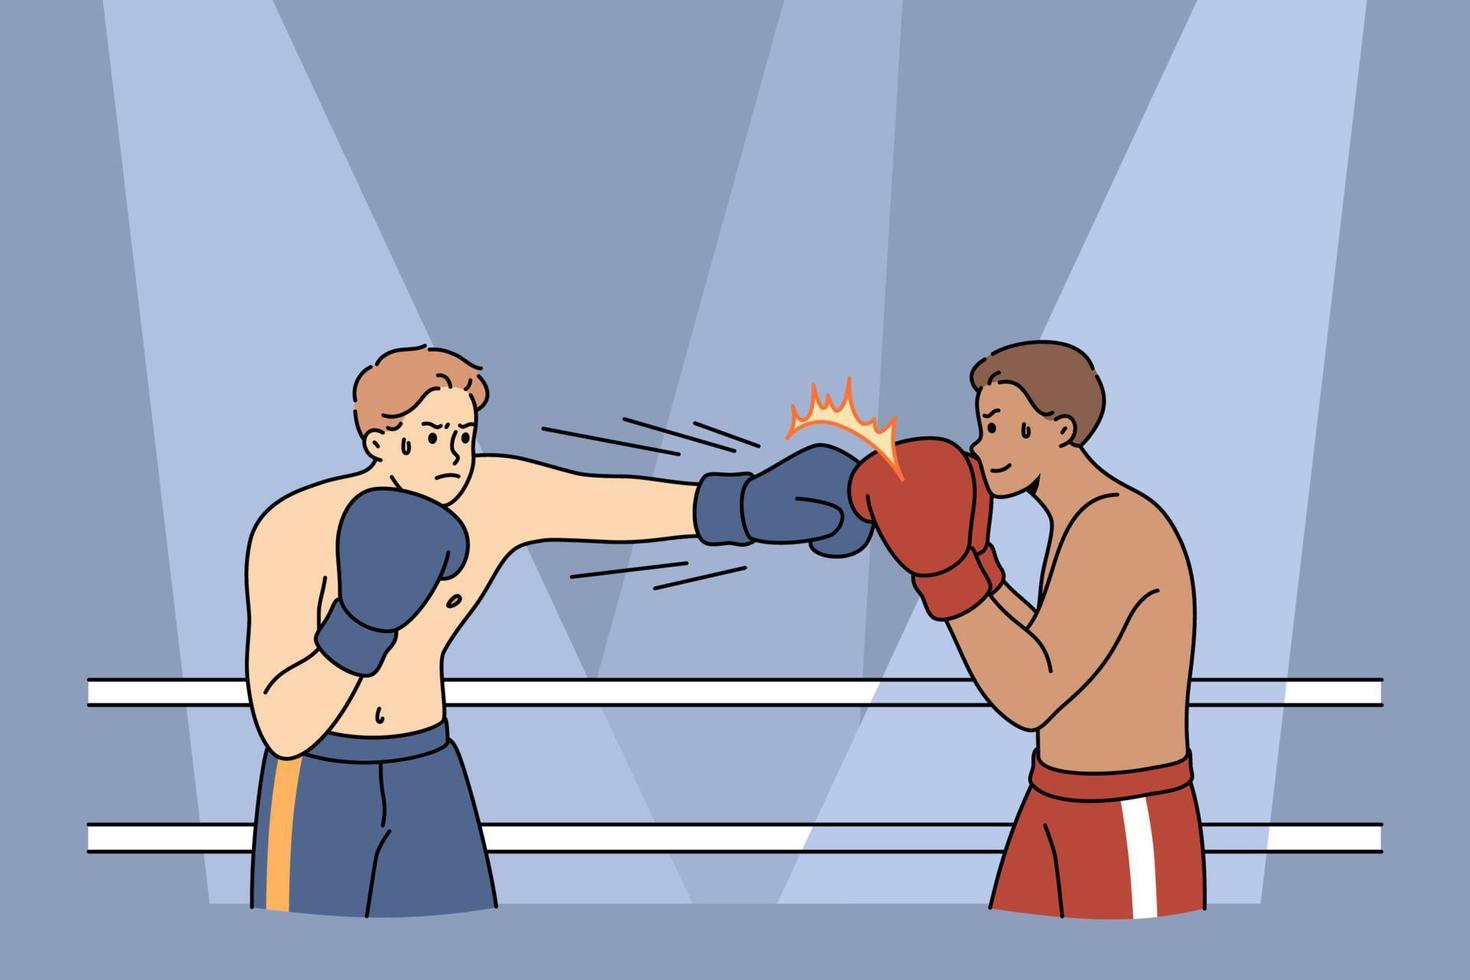 boxers masculinos em luvas lutam no ringue quadrado. fortes e poderosos desportistas ou lutadores competem socando na competição de boxe muay thai. conceito de esporte de combate. ilustração vetorial plana. vetor